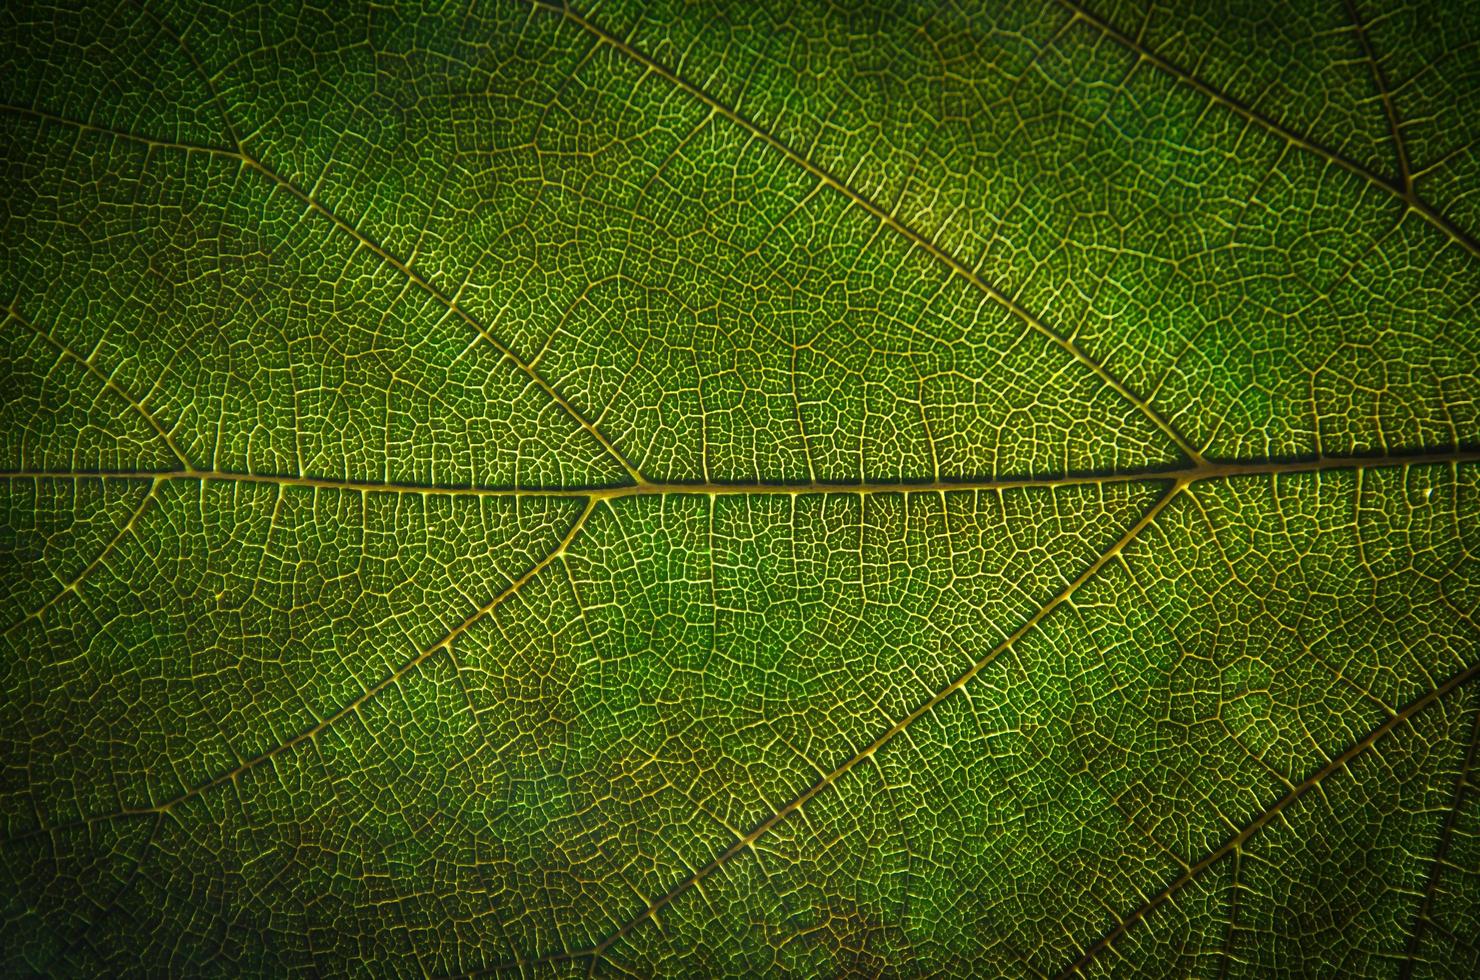 gröna bladstruktur och bladfiber, tapeter i detalj av gröna blad foto